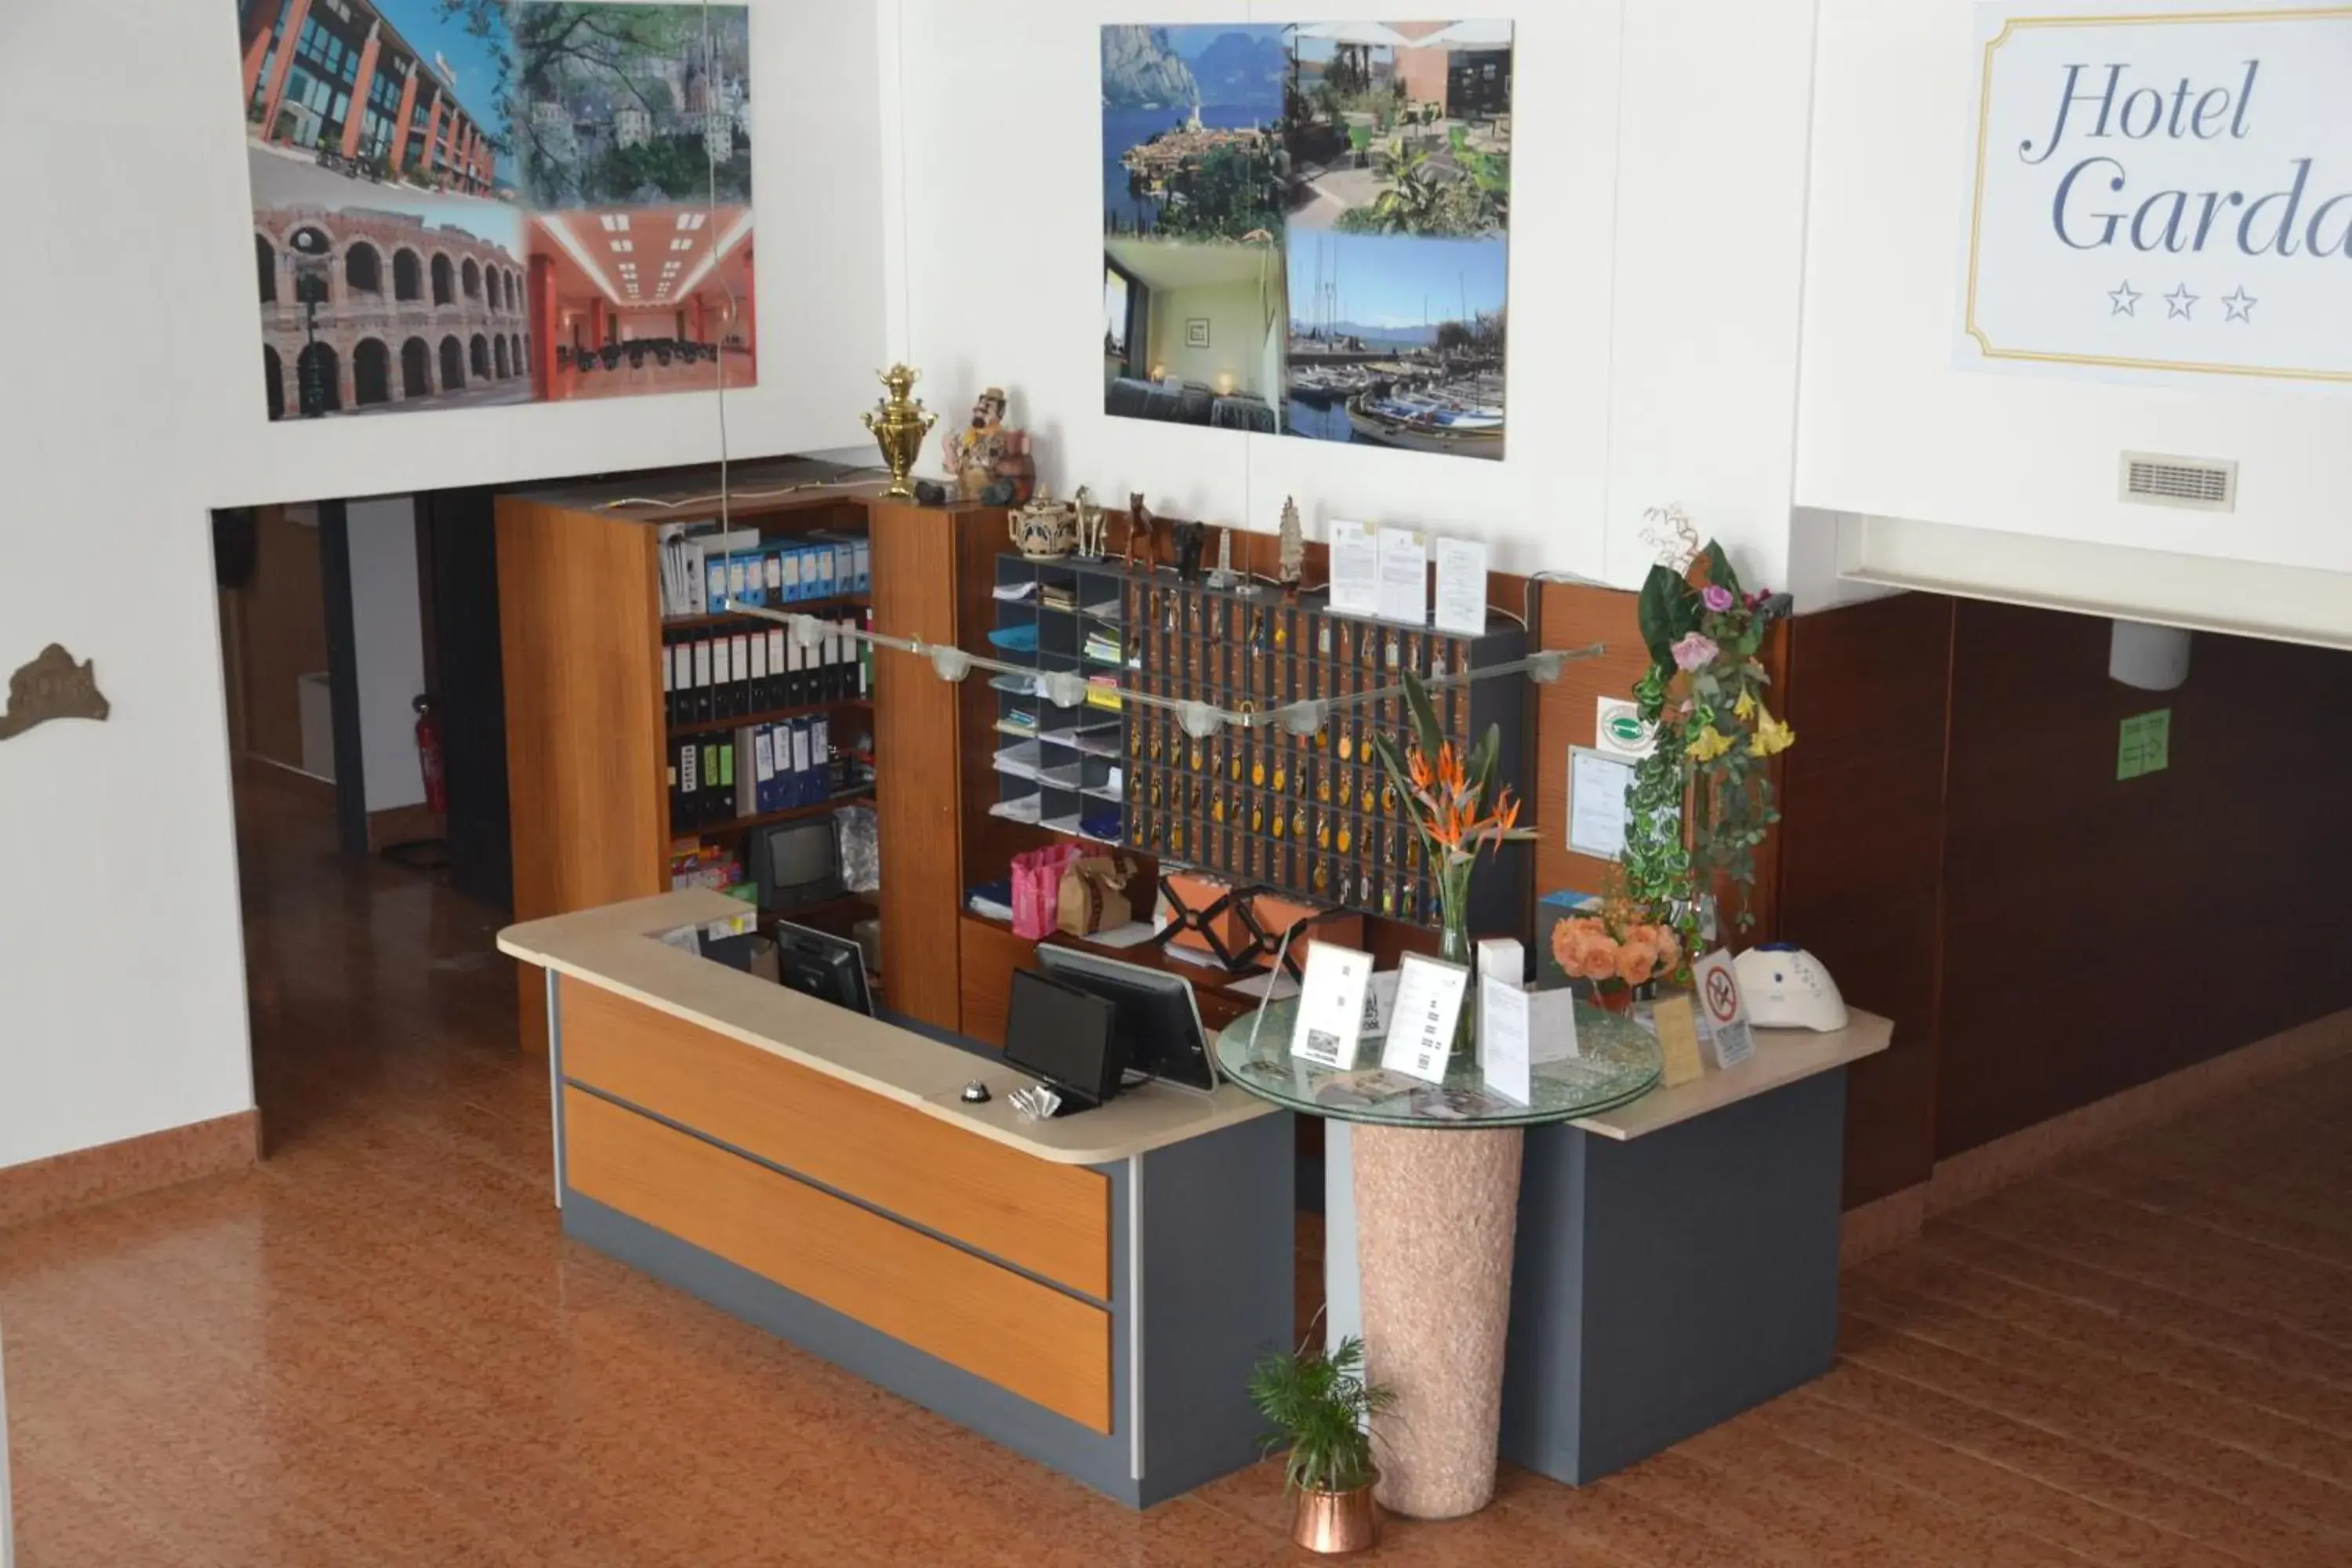 Lobby or reception in Hotel Garda